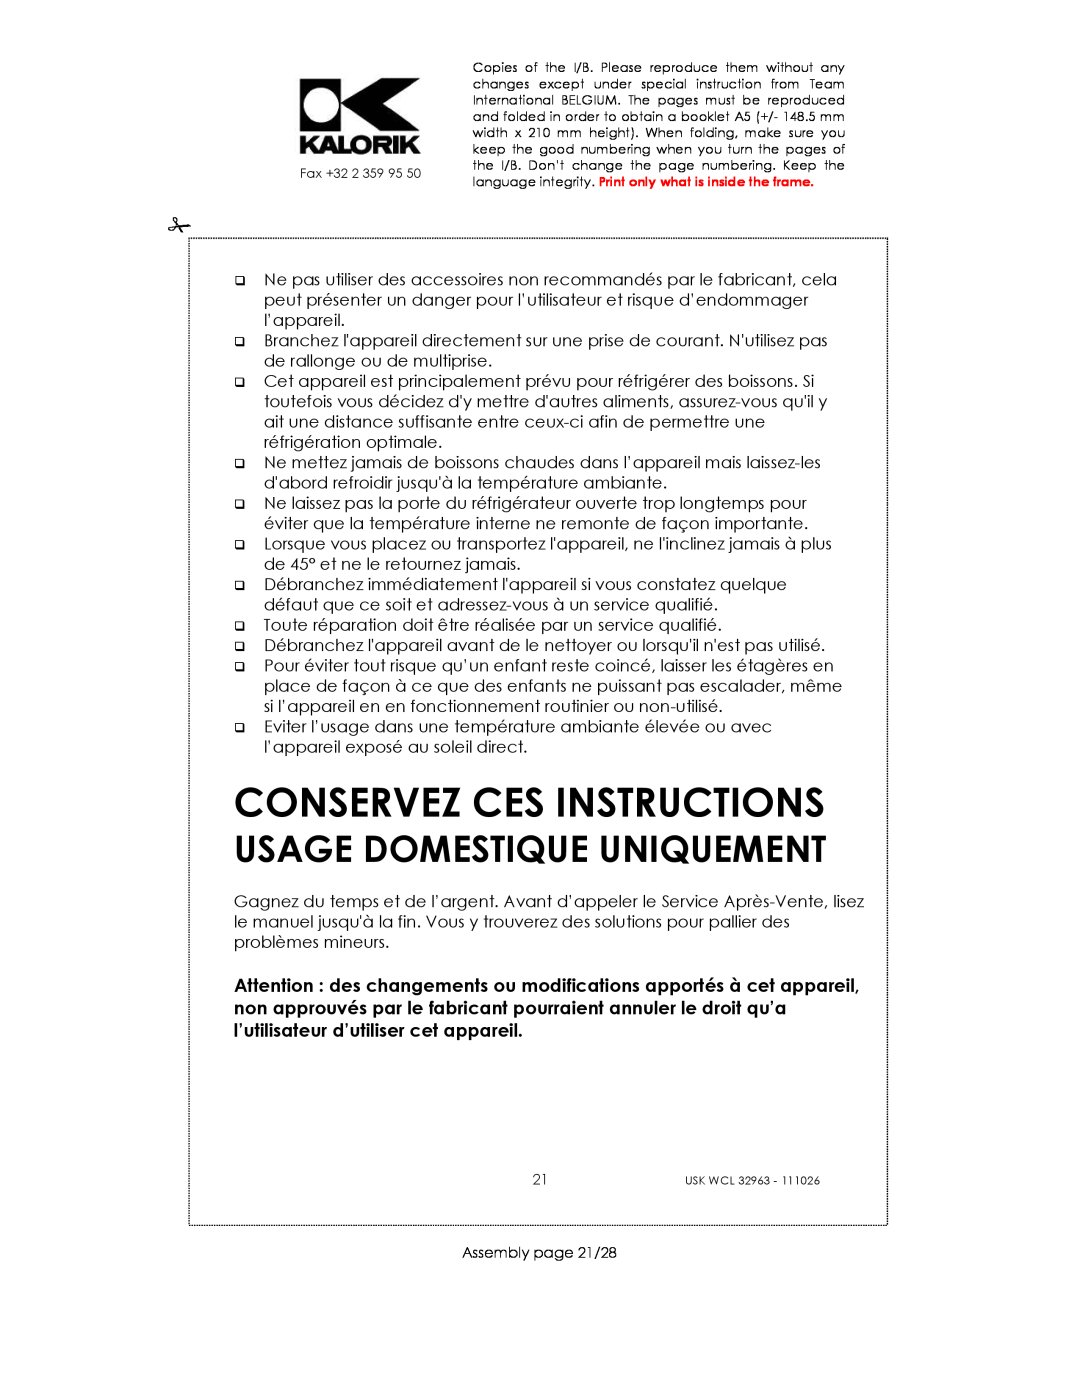 Kalorik USK WCL 32963 manual Conservez Ces Instructions, Usage Domestique Uniquement 